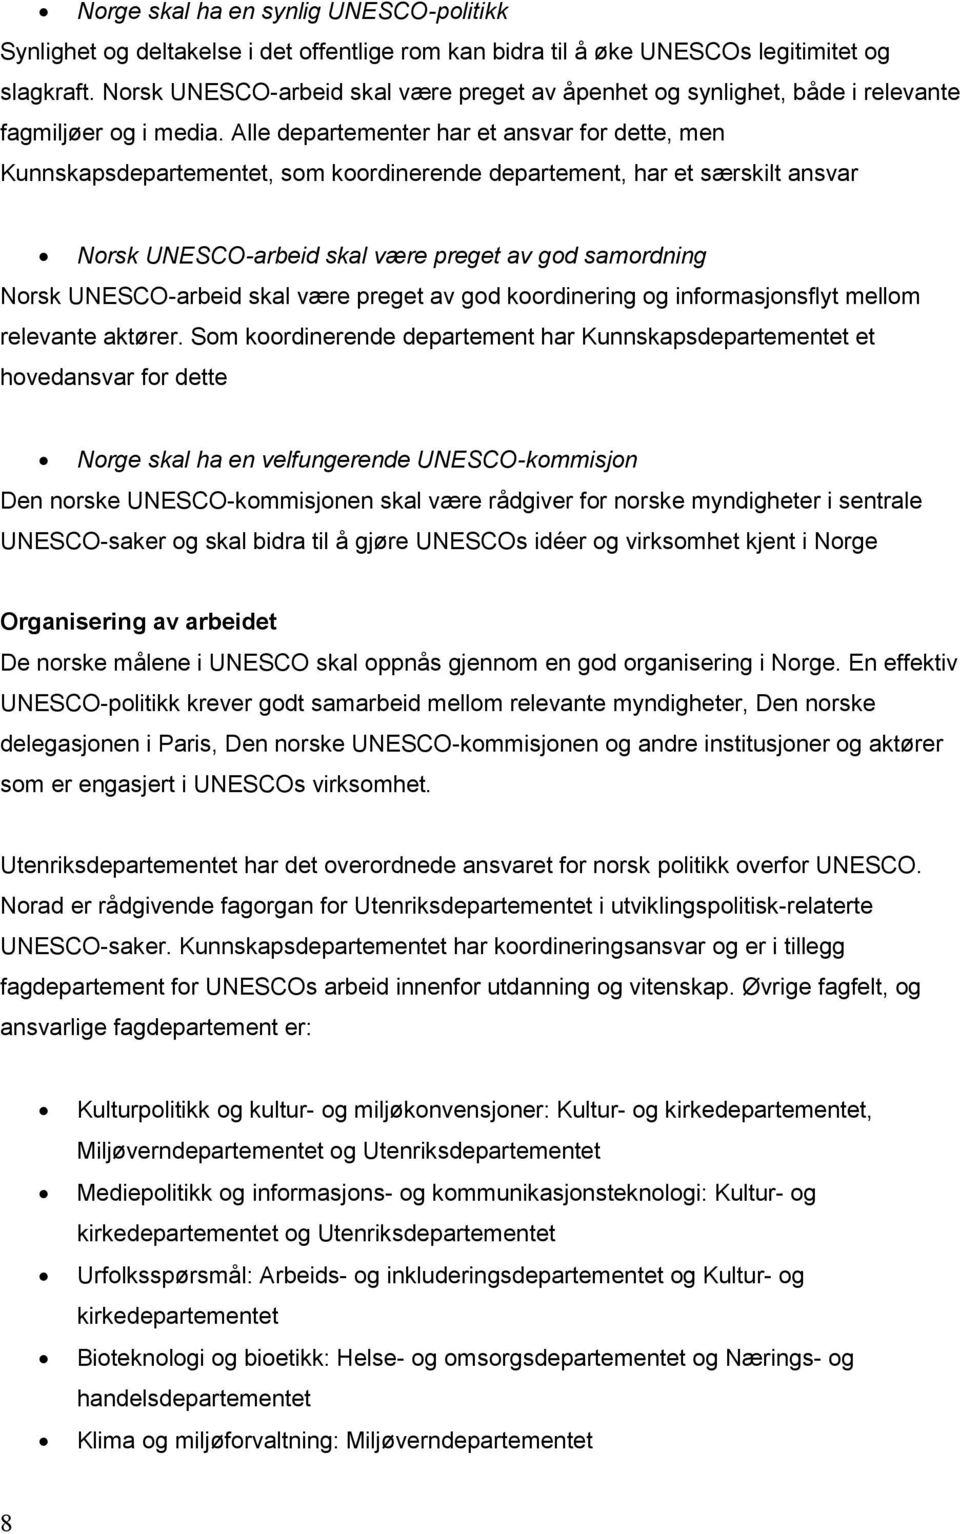 Alle departementer har et ansvar for dette, men Kunnskapsdepartementet, som koordinerende departement, har et særskilt ansvar Norsk UNESCO-arbeid skal være preget av god samordning Norsk